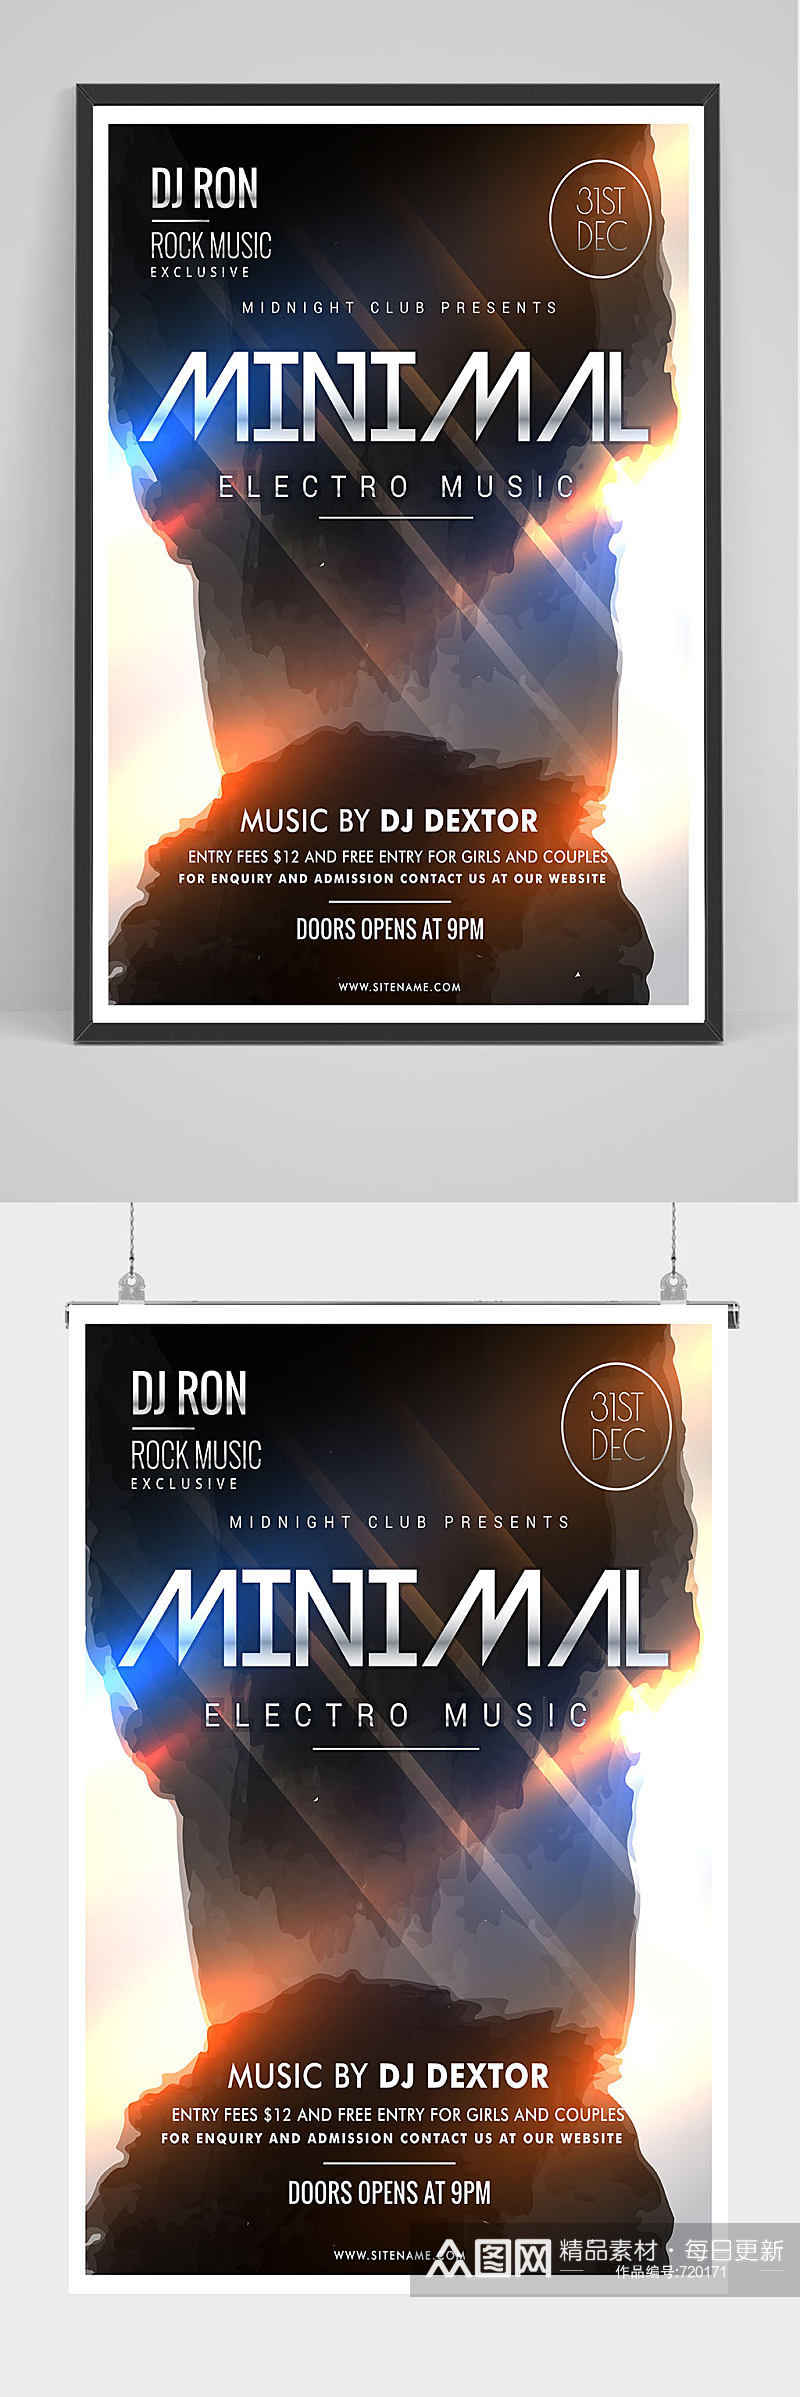 酒吧DJ电音节派对海报设计素材